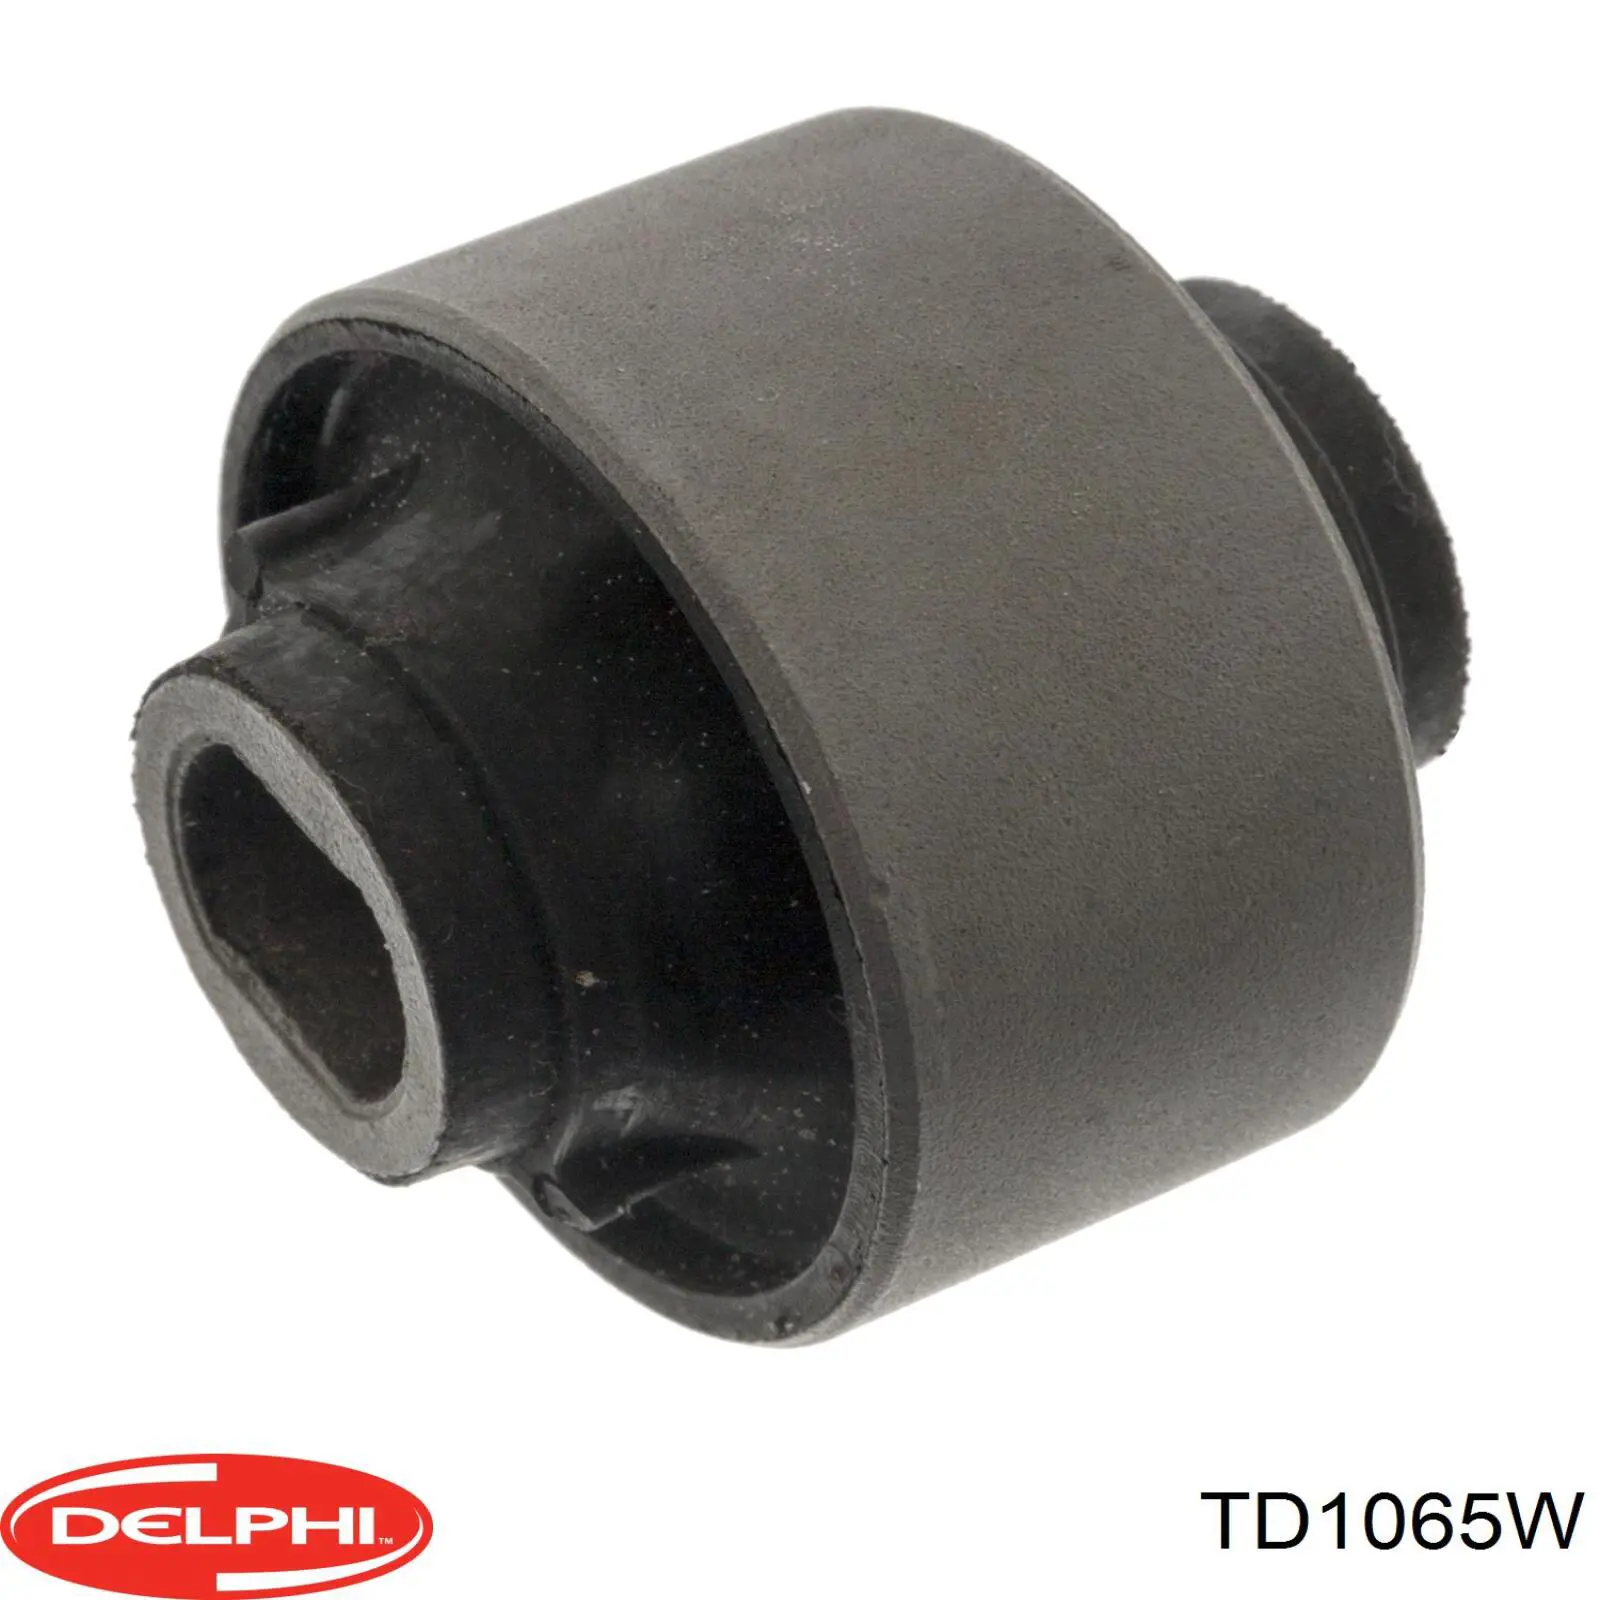 TD1065W Delphi bloco silencioso dianteiro do braço oscilante inferior